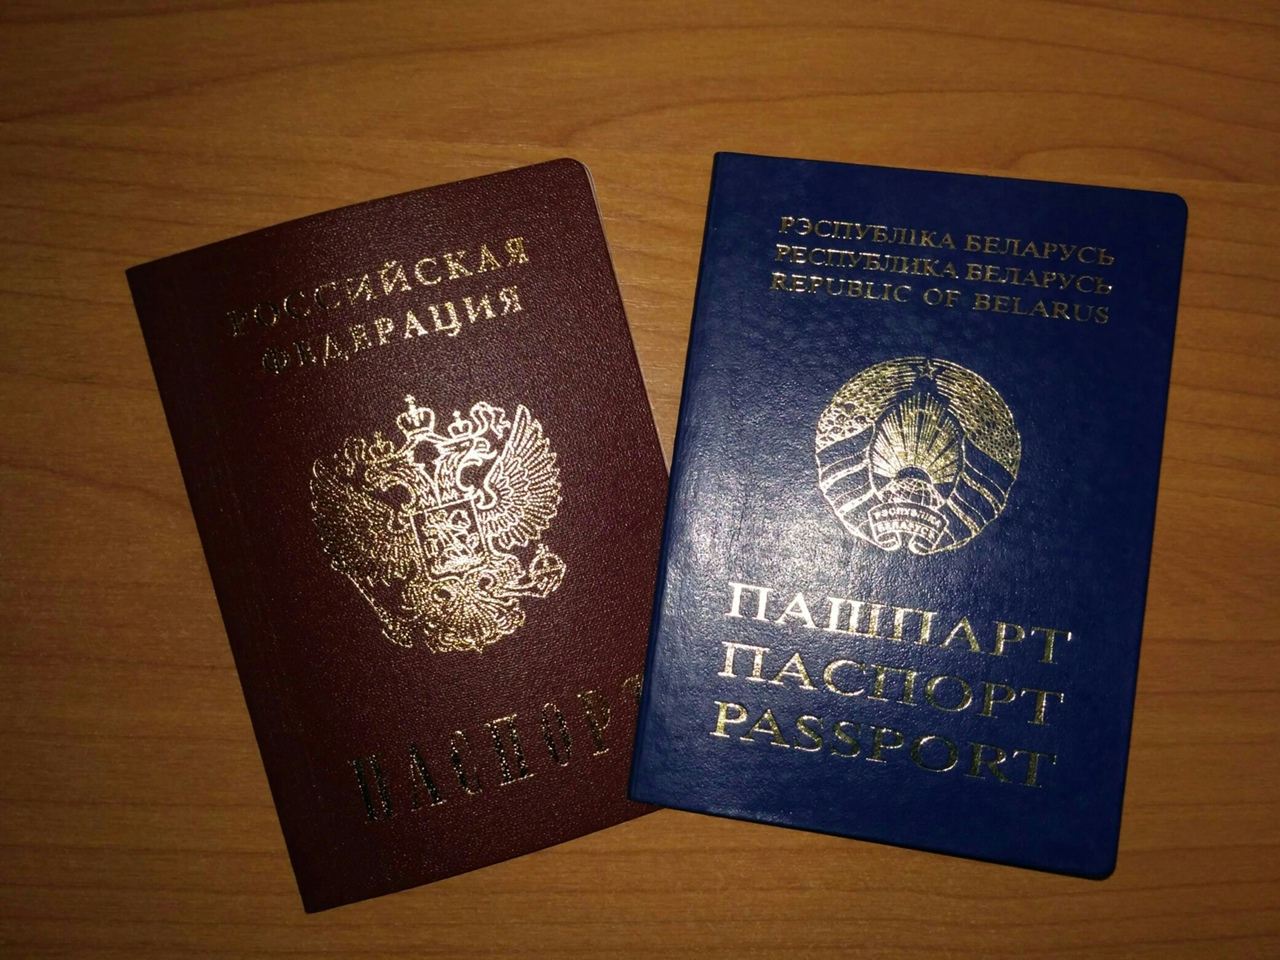 Фото на белорусский паспорт размер